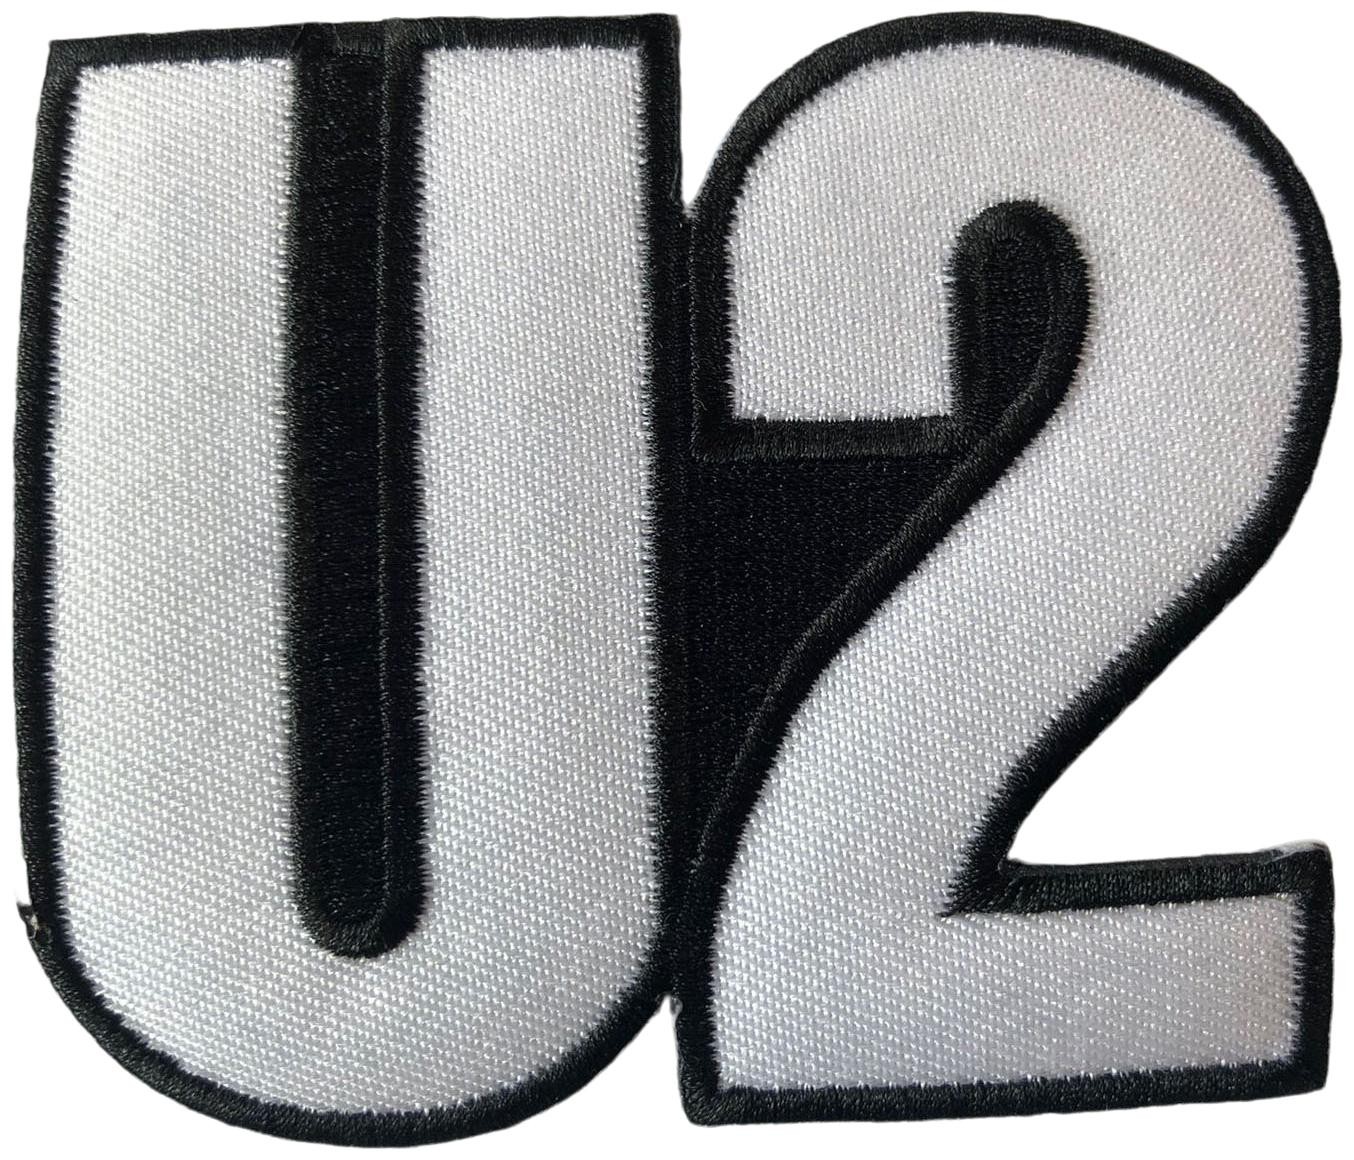 U2 - Cut Out 